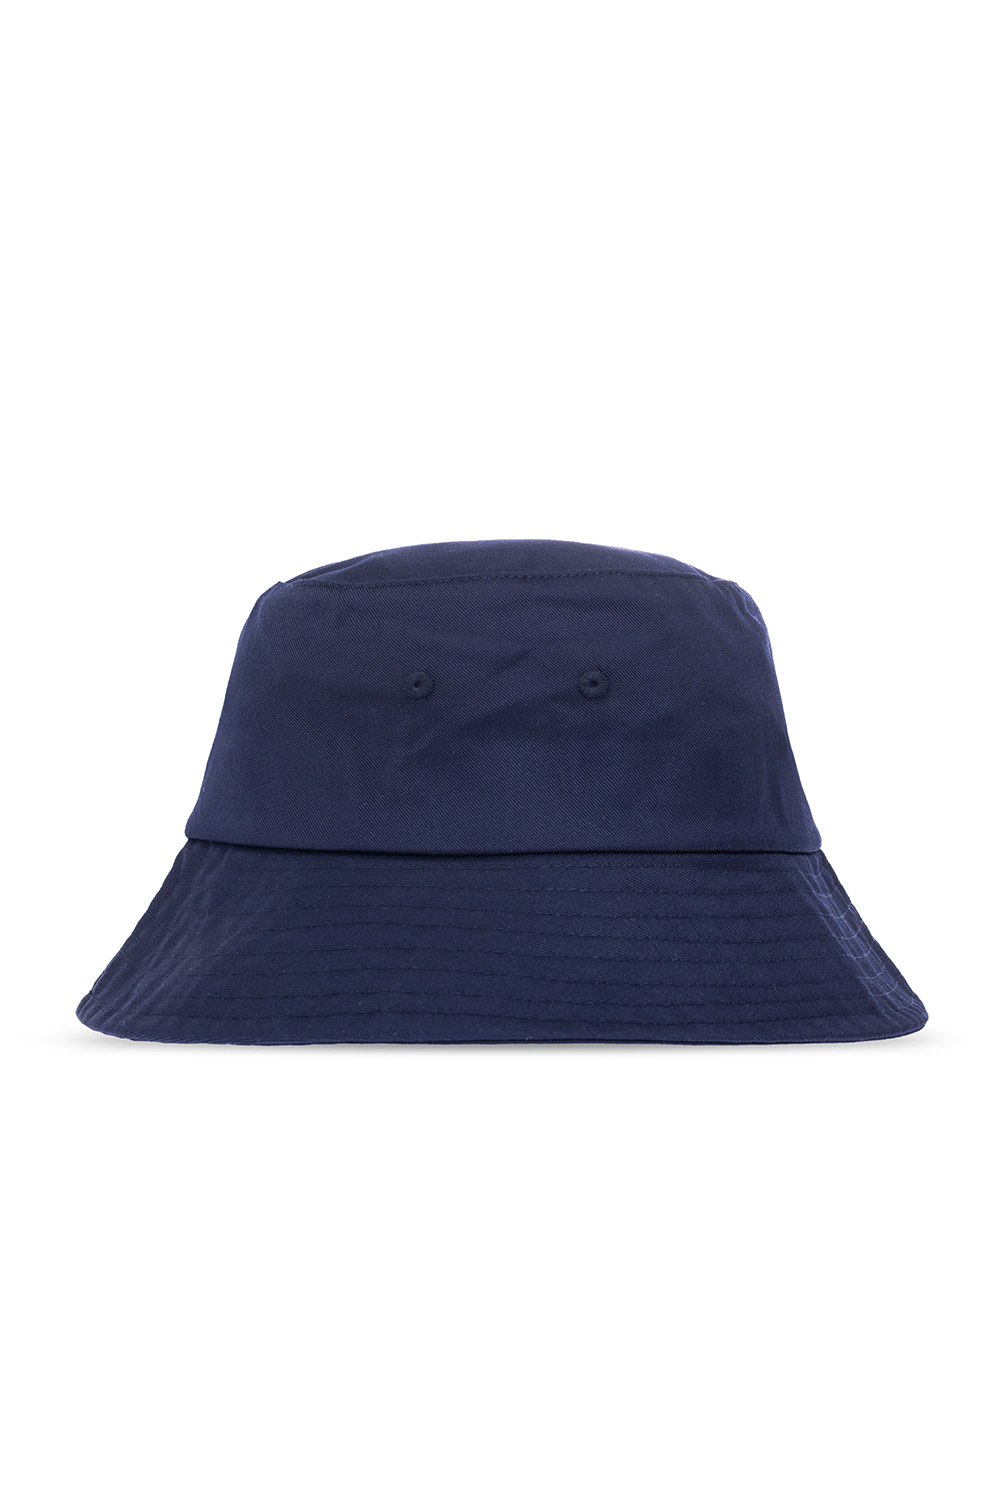 Samsøe Samsøe ‘Anton’ hat